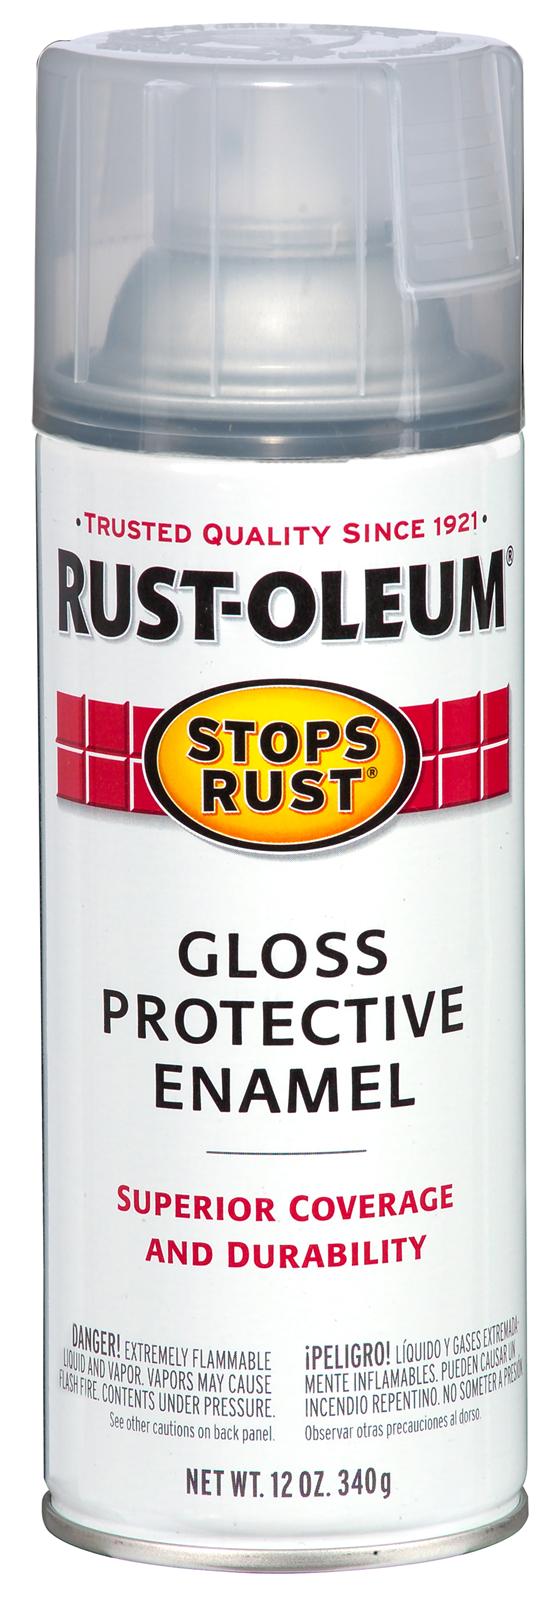 Rust-Oleum 7701830 Stops Rust Spray Paint, 12 oz, Gloss Crystal Clear